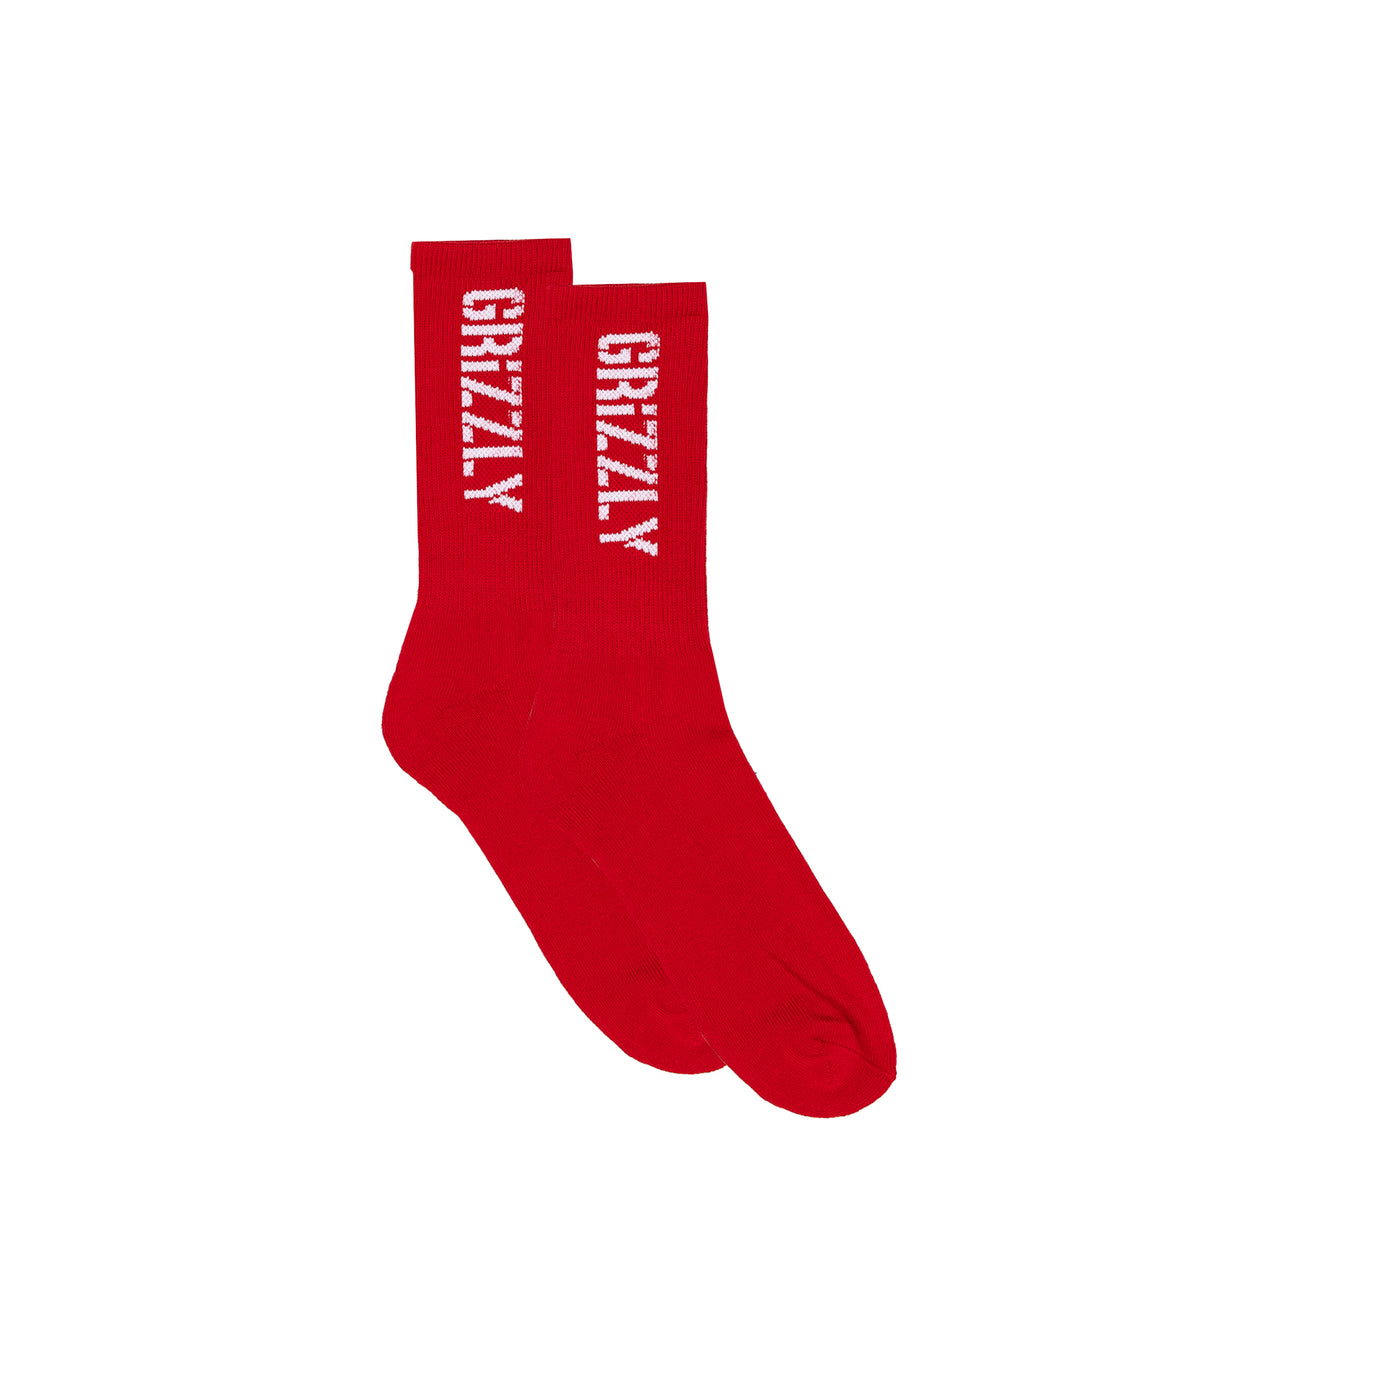 Stamp Socks - Red / White